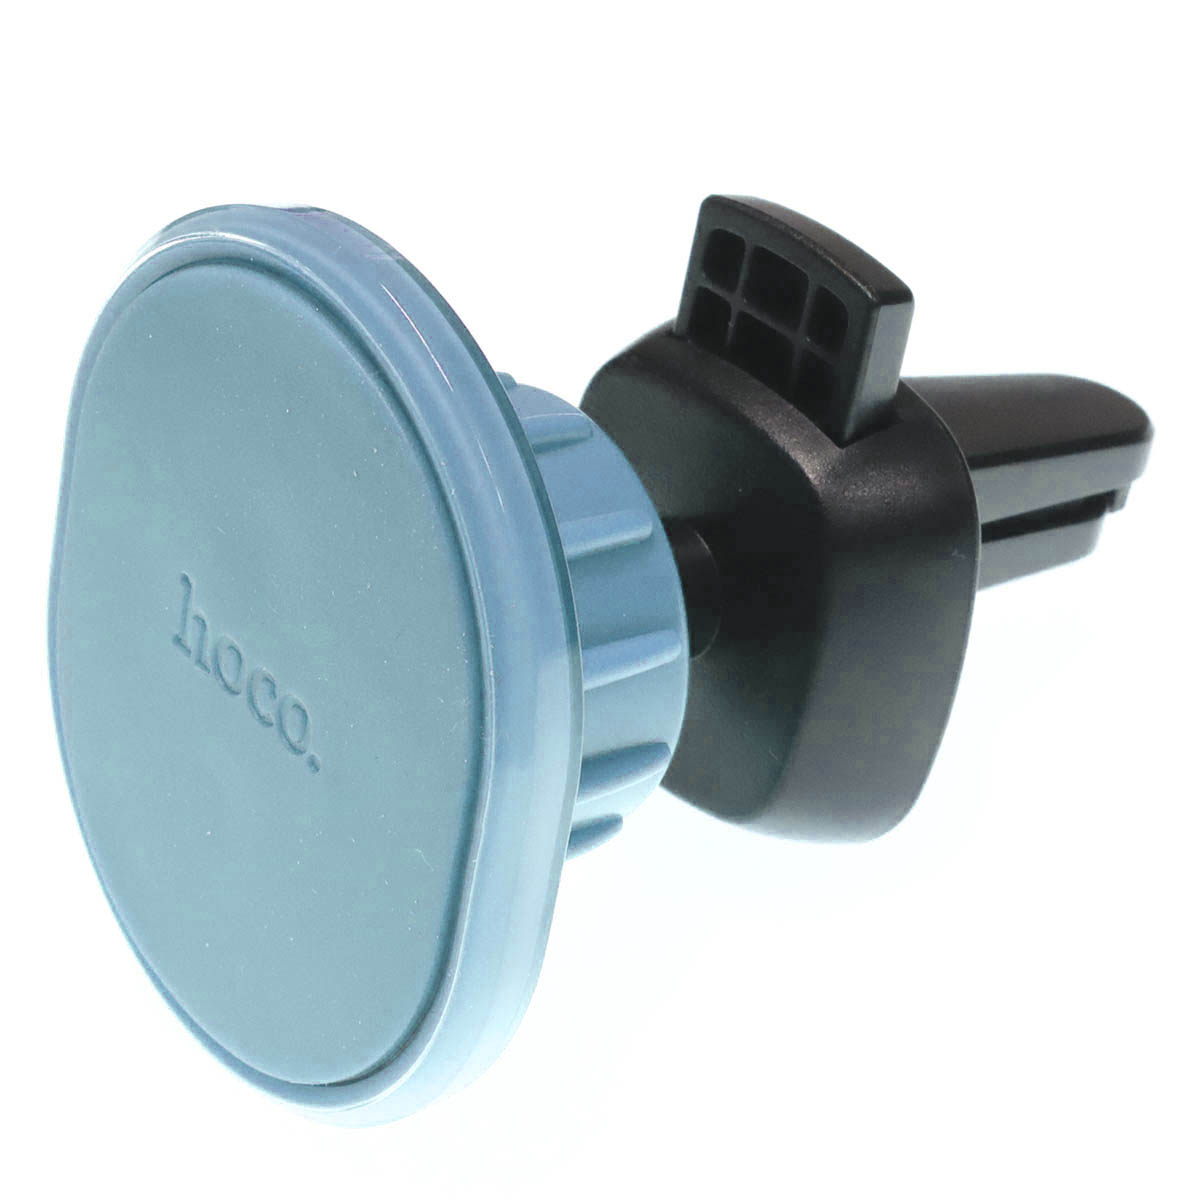 Автомобильный магнитный держатель HOCO H1 Air Outlet для смартфона, в воздуховод, цвет голубой